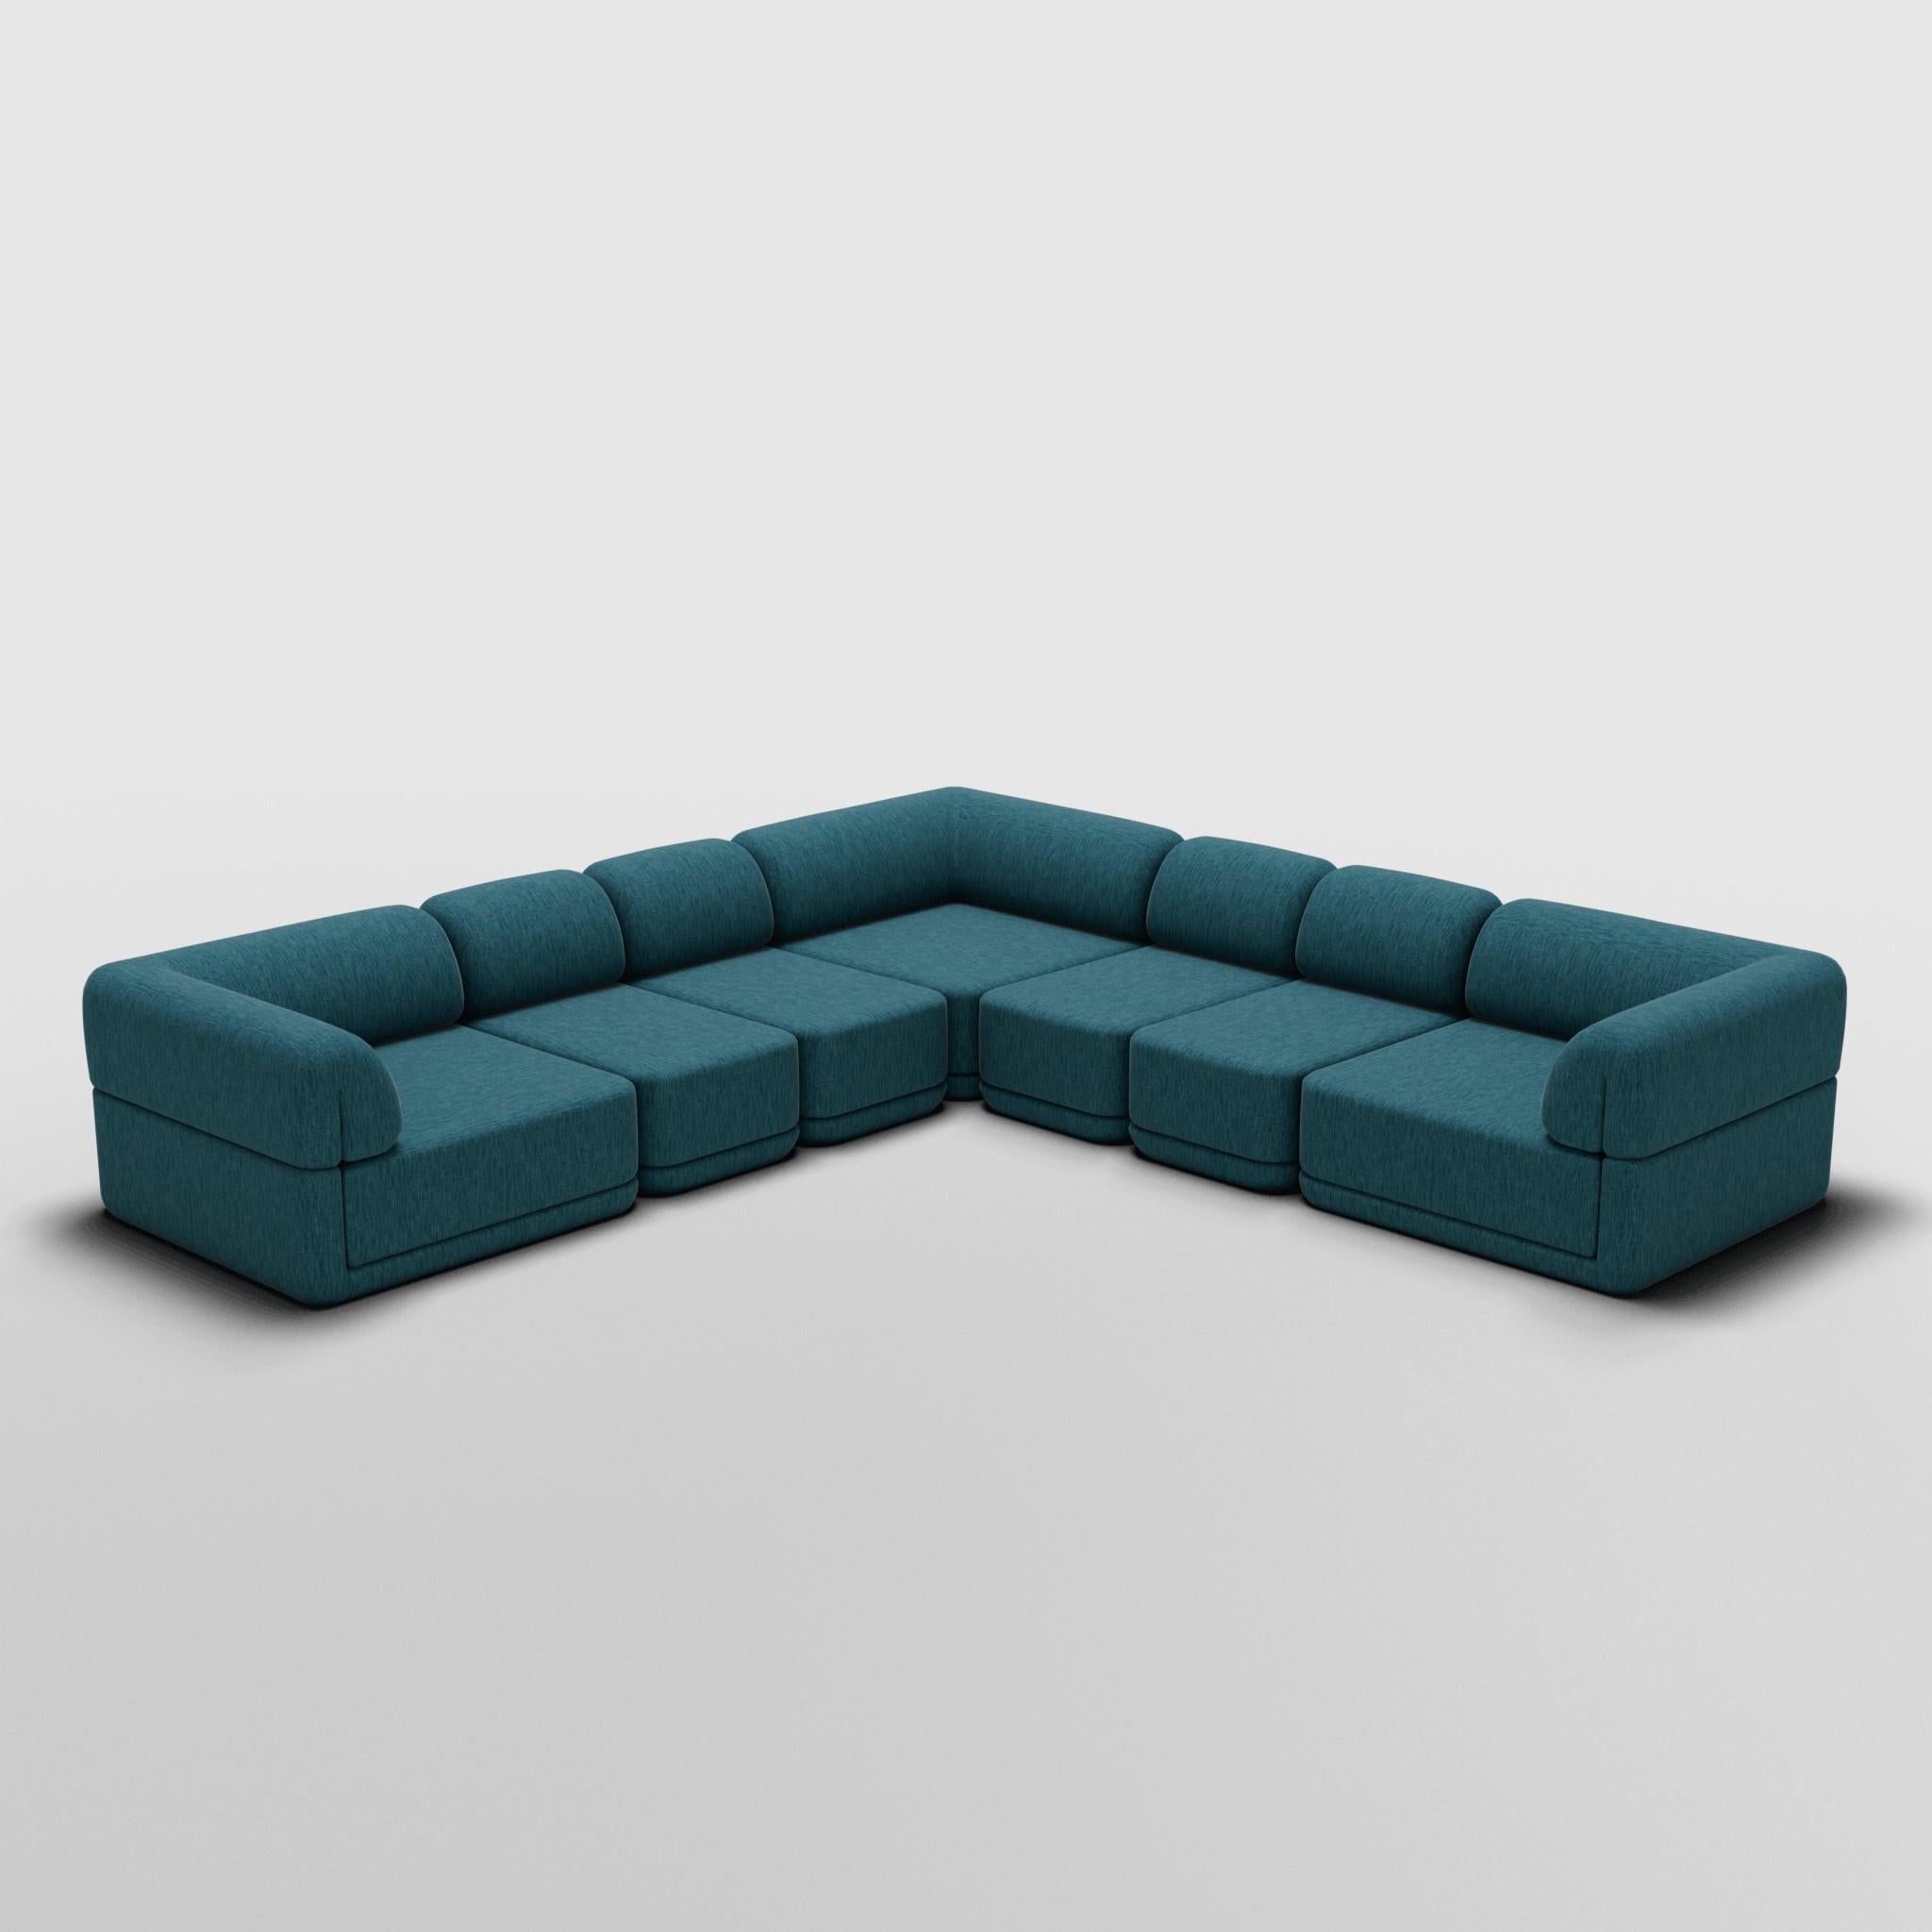 Corner Slim Sectional - Inspiriert von italienischen Luxusmöbeln der 70er Jahre

Entdecken Sie das Cube Sofa, wo Kunst auf Anpassungsfähigkeit trifft. Sein skulpturales Design und der individuell anpassbare Komfort schaffen unendliche Möglichkeiten